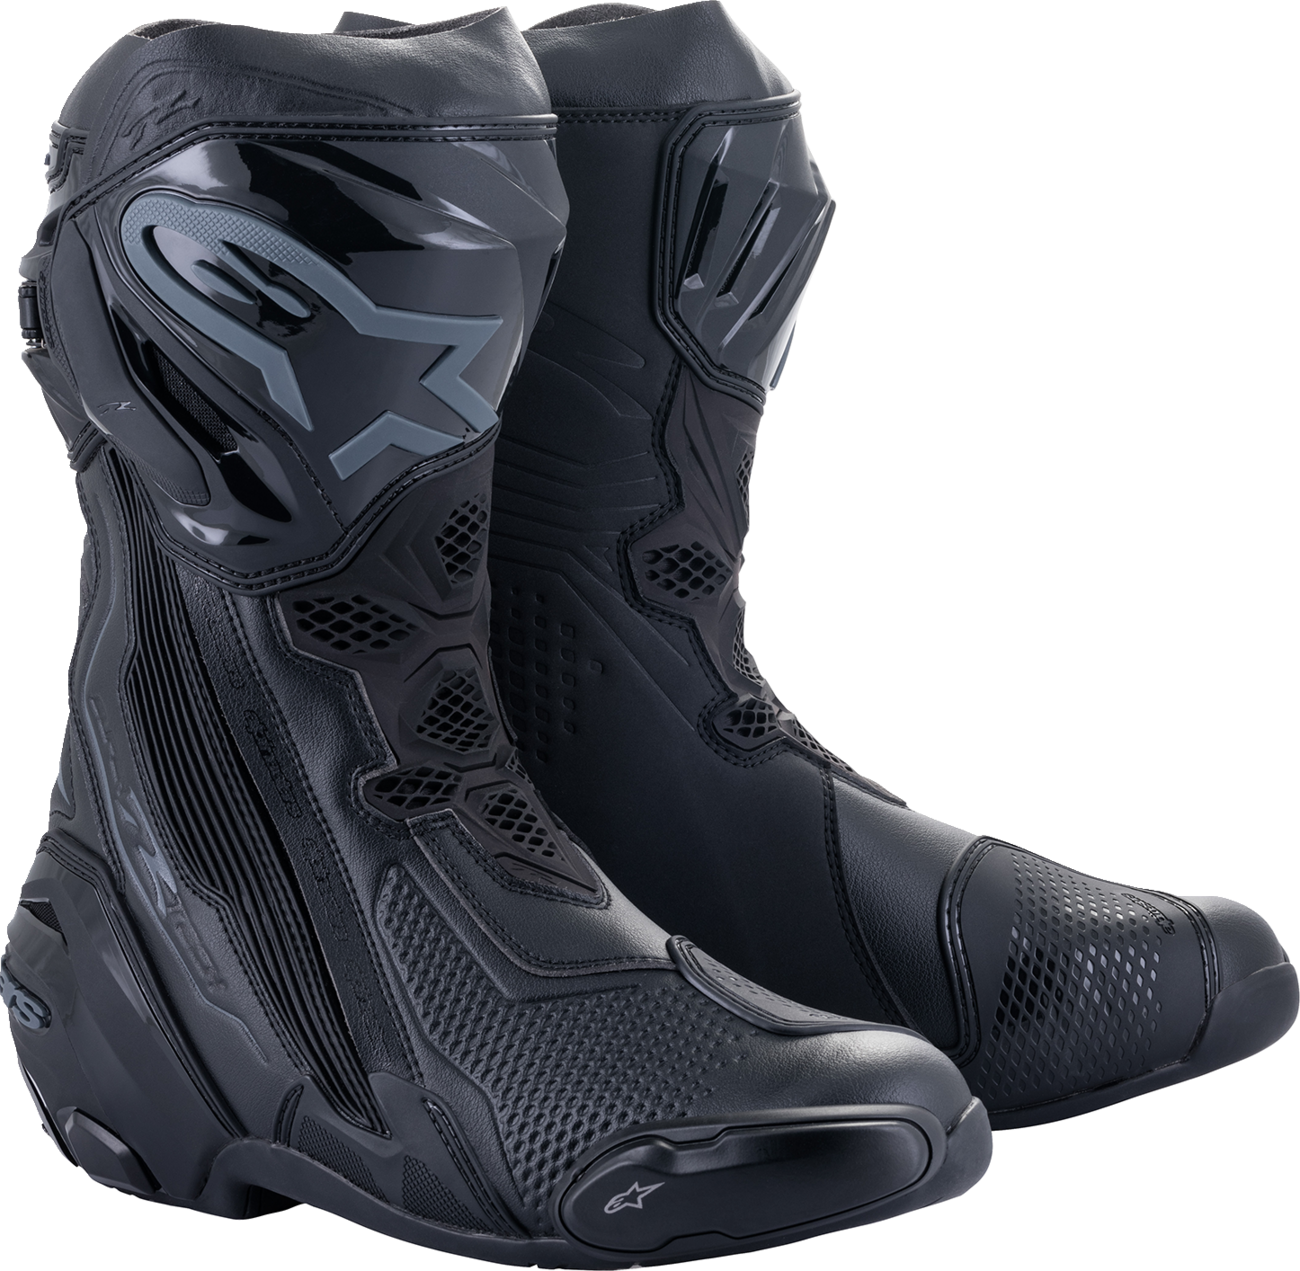 ALPINESTARS Supertech R Boots - Black - US 9 / EU 43 2220021-1100-43